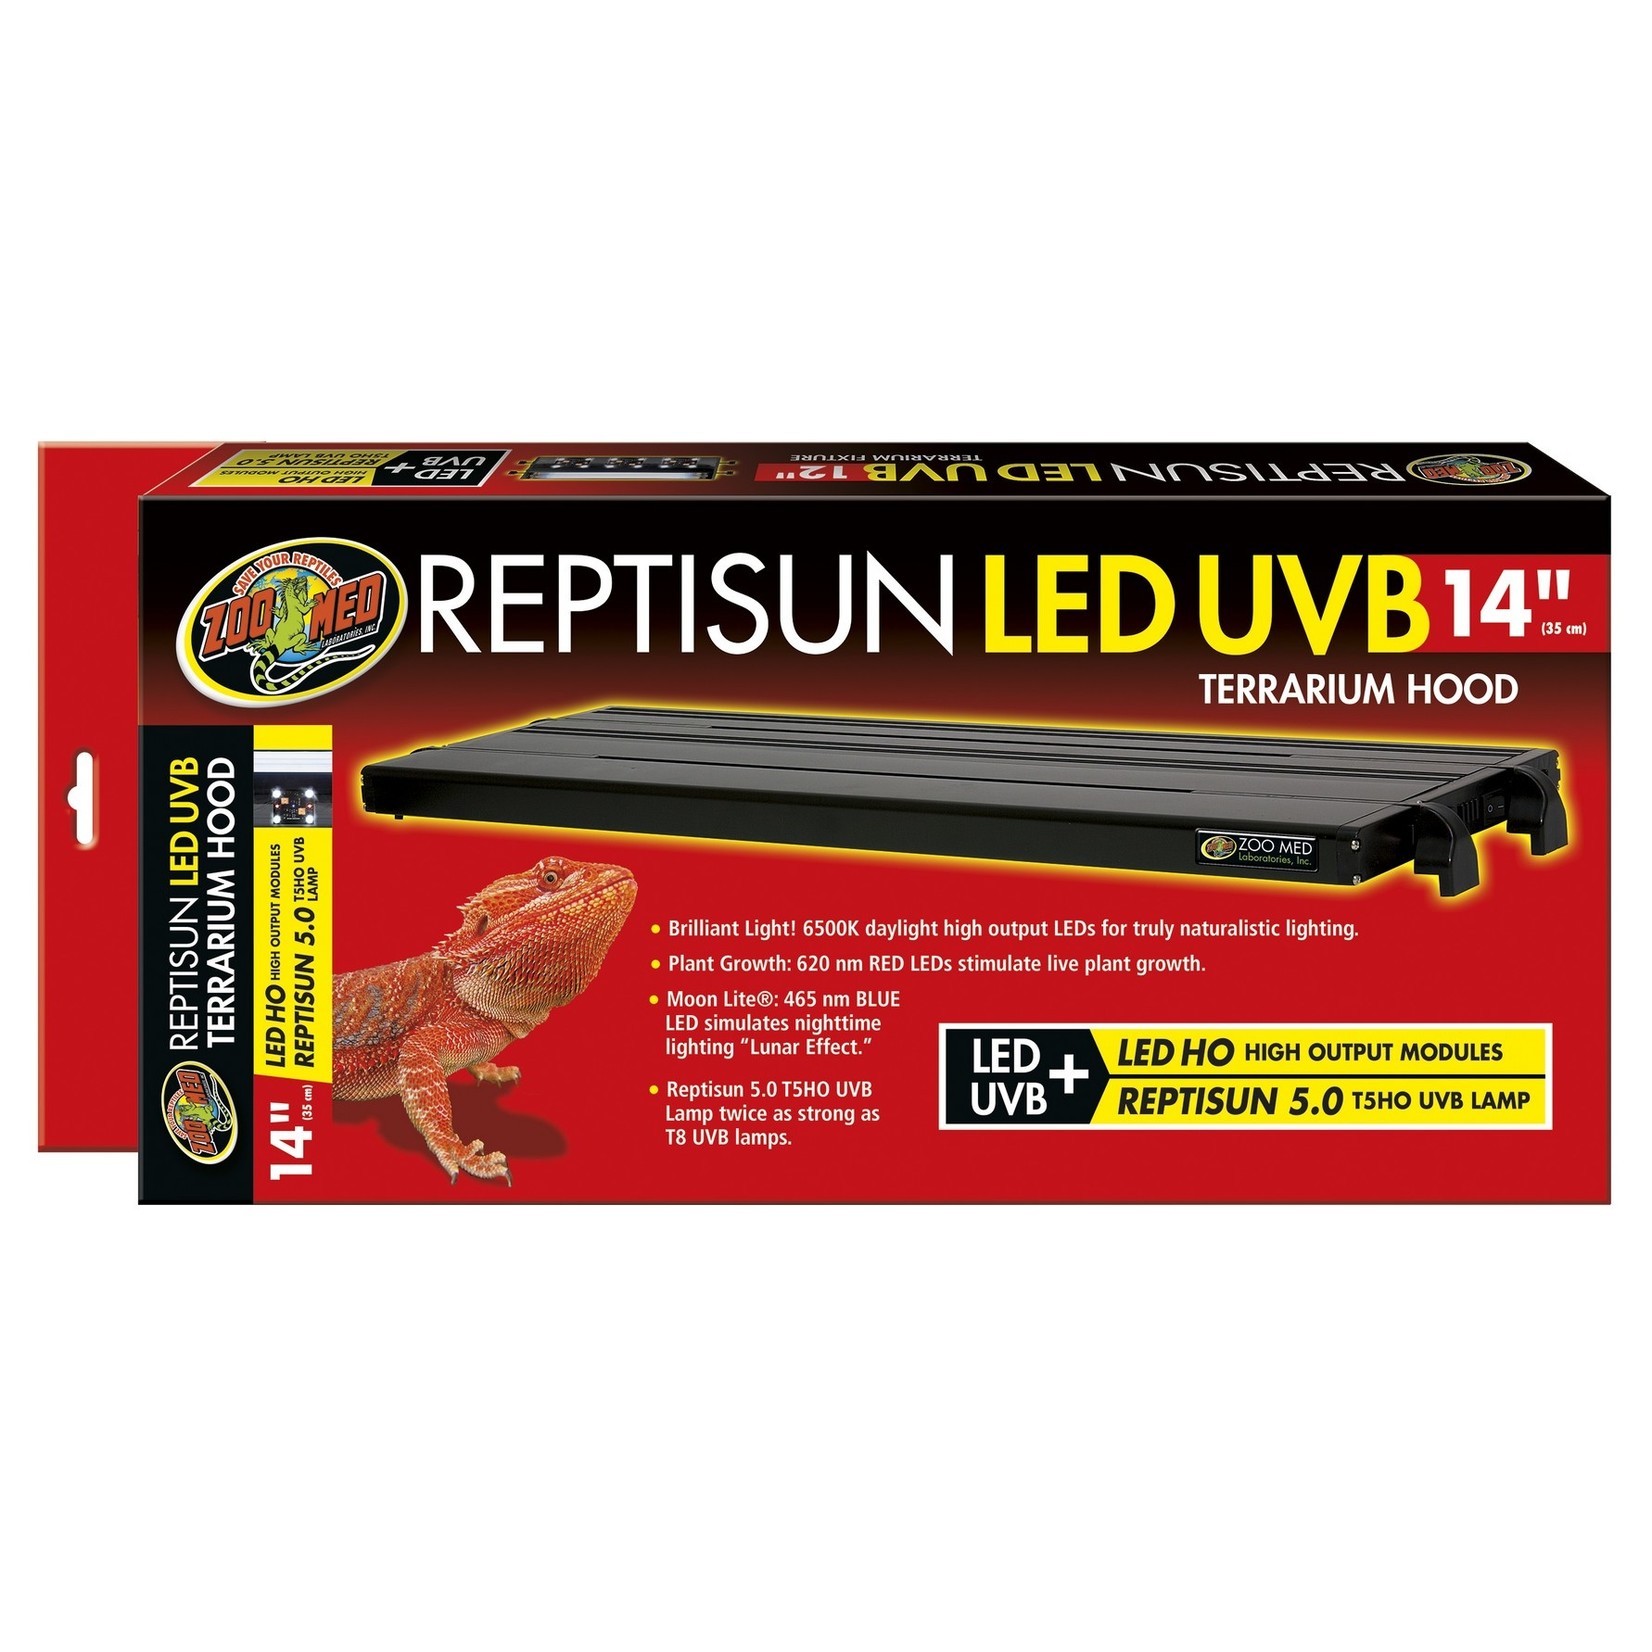 Buy Reptile LED & UVB Terrarium Hood Lighting Fixture Kit For Your reptile  pets. – REPTI ZOO